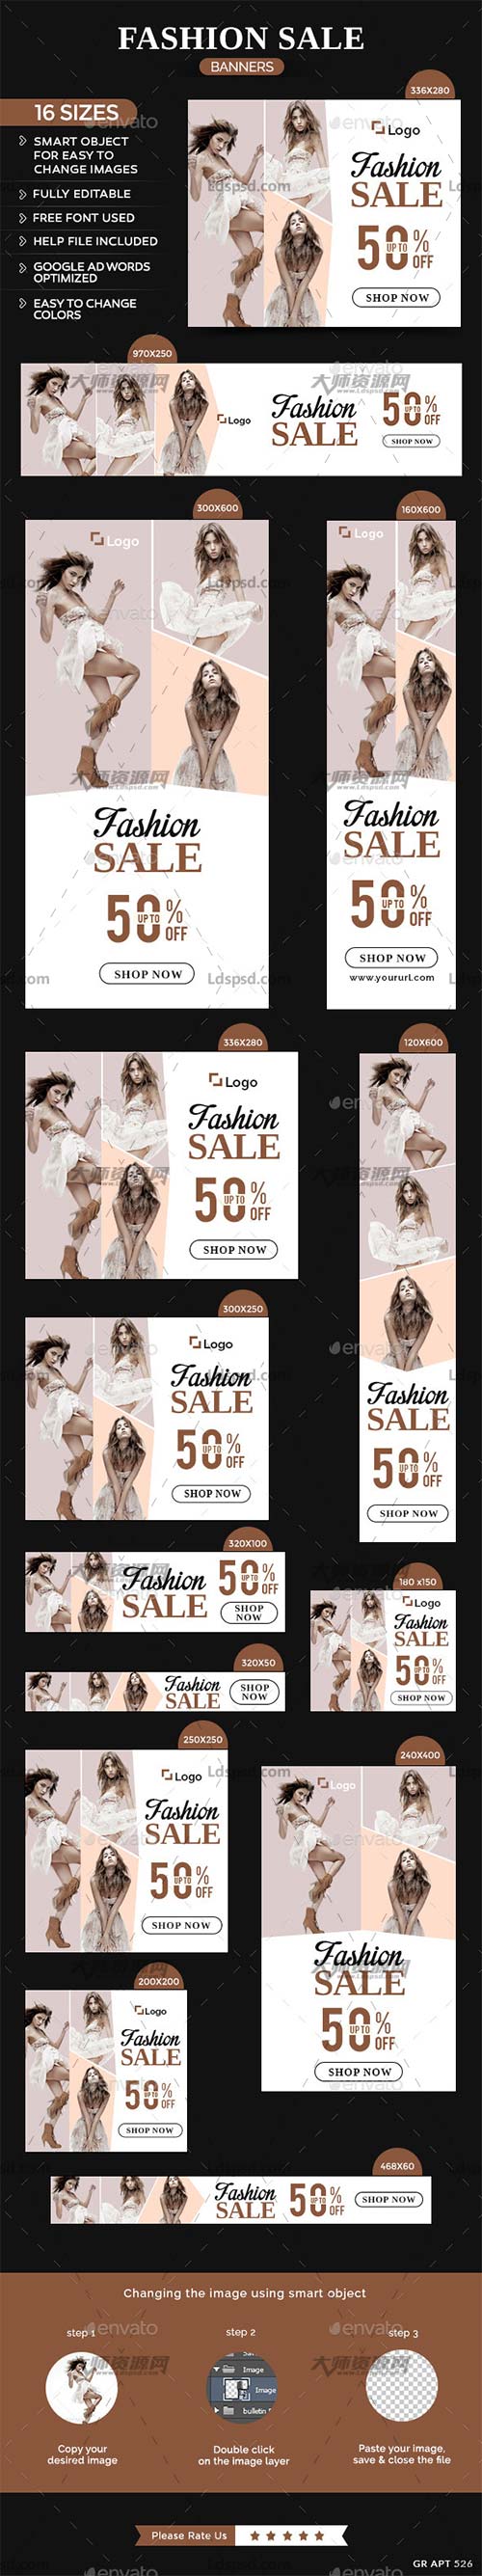 Fashion Sale Banners,网店对联/横幅广告模板(女装类)